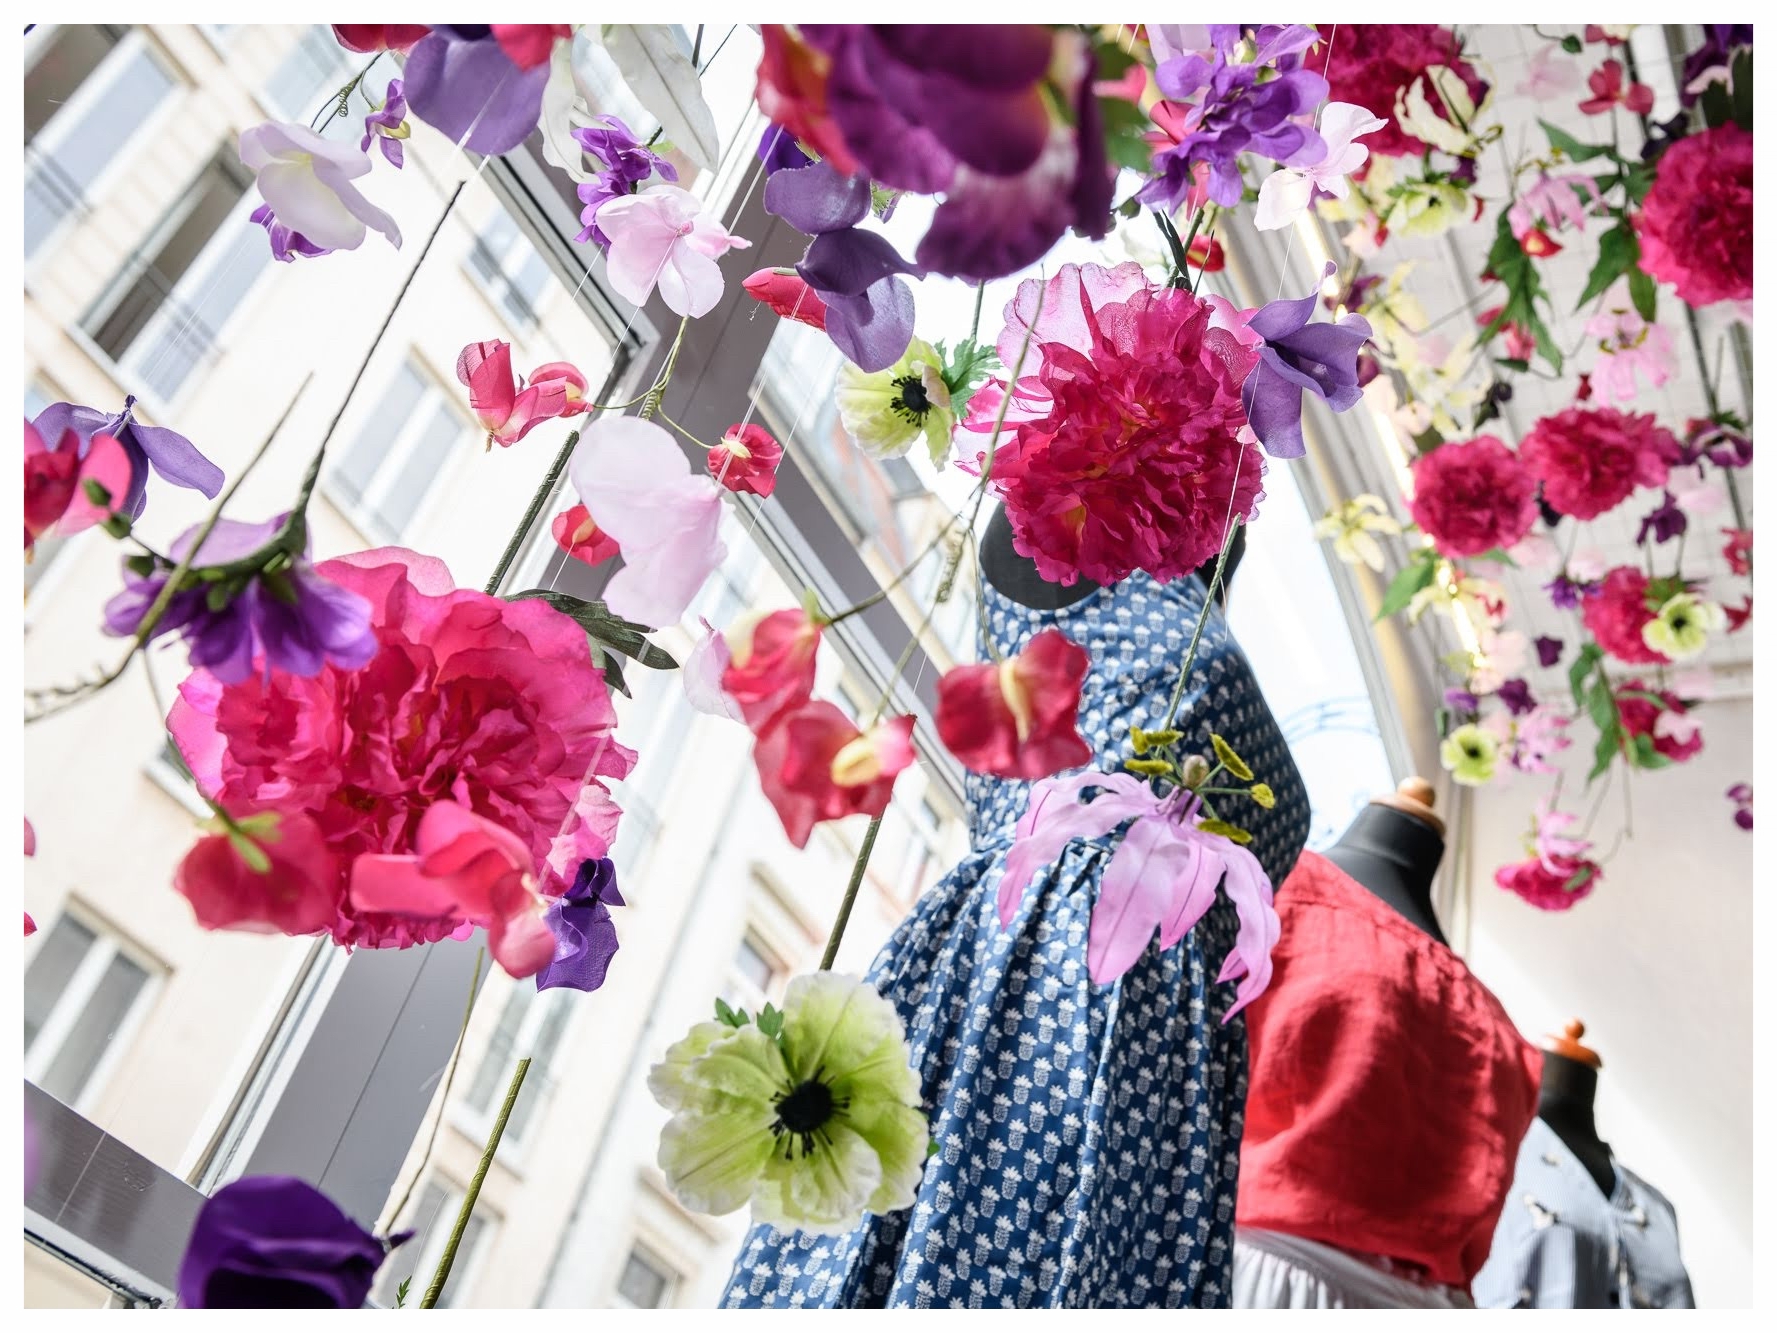 Schaufensterdekoration Dresden Lindegruen Blumen